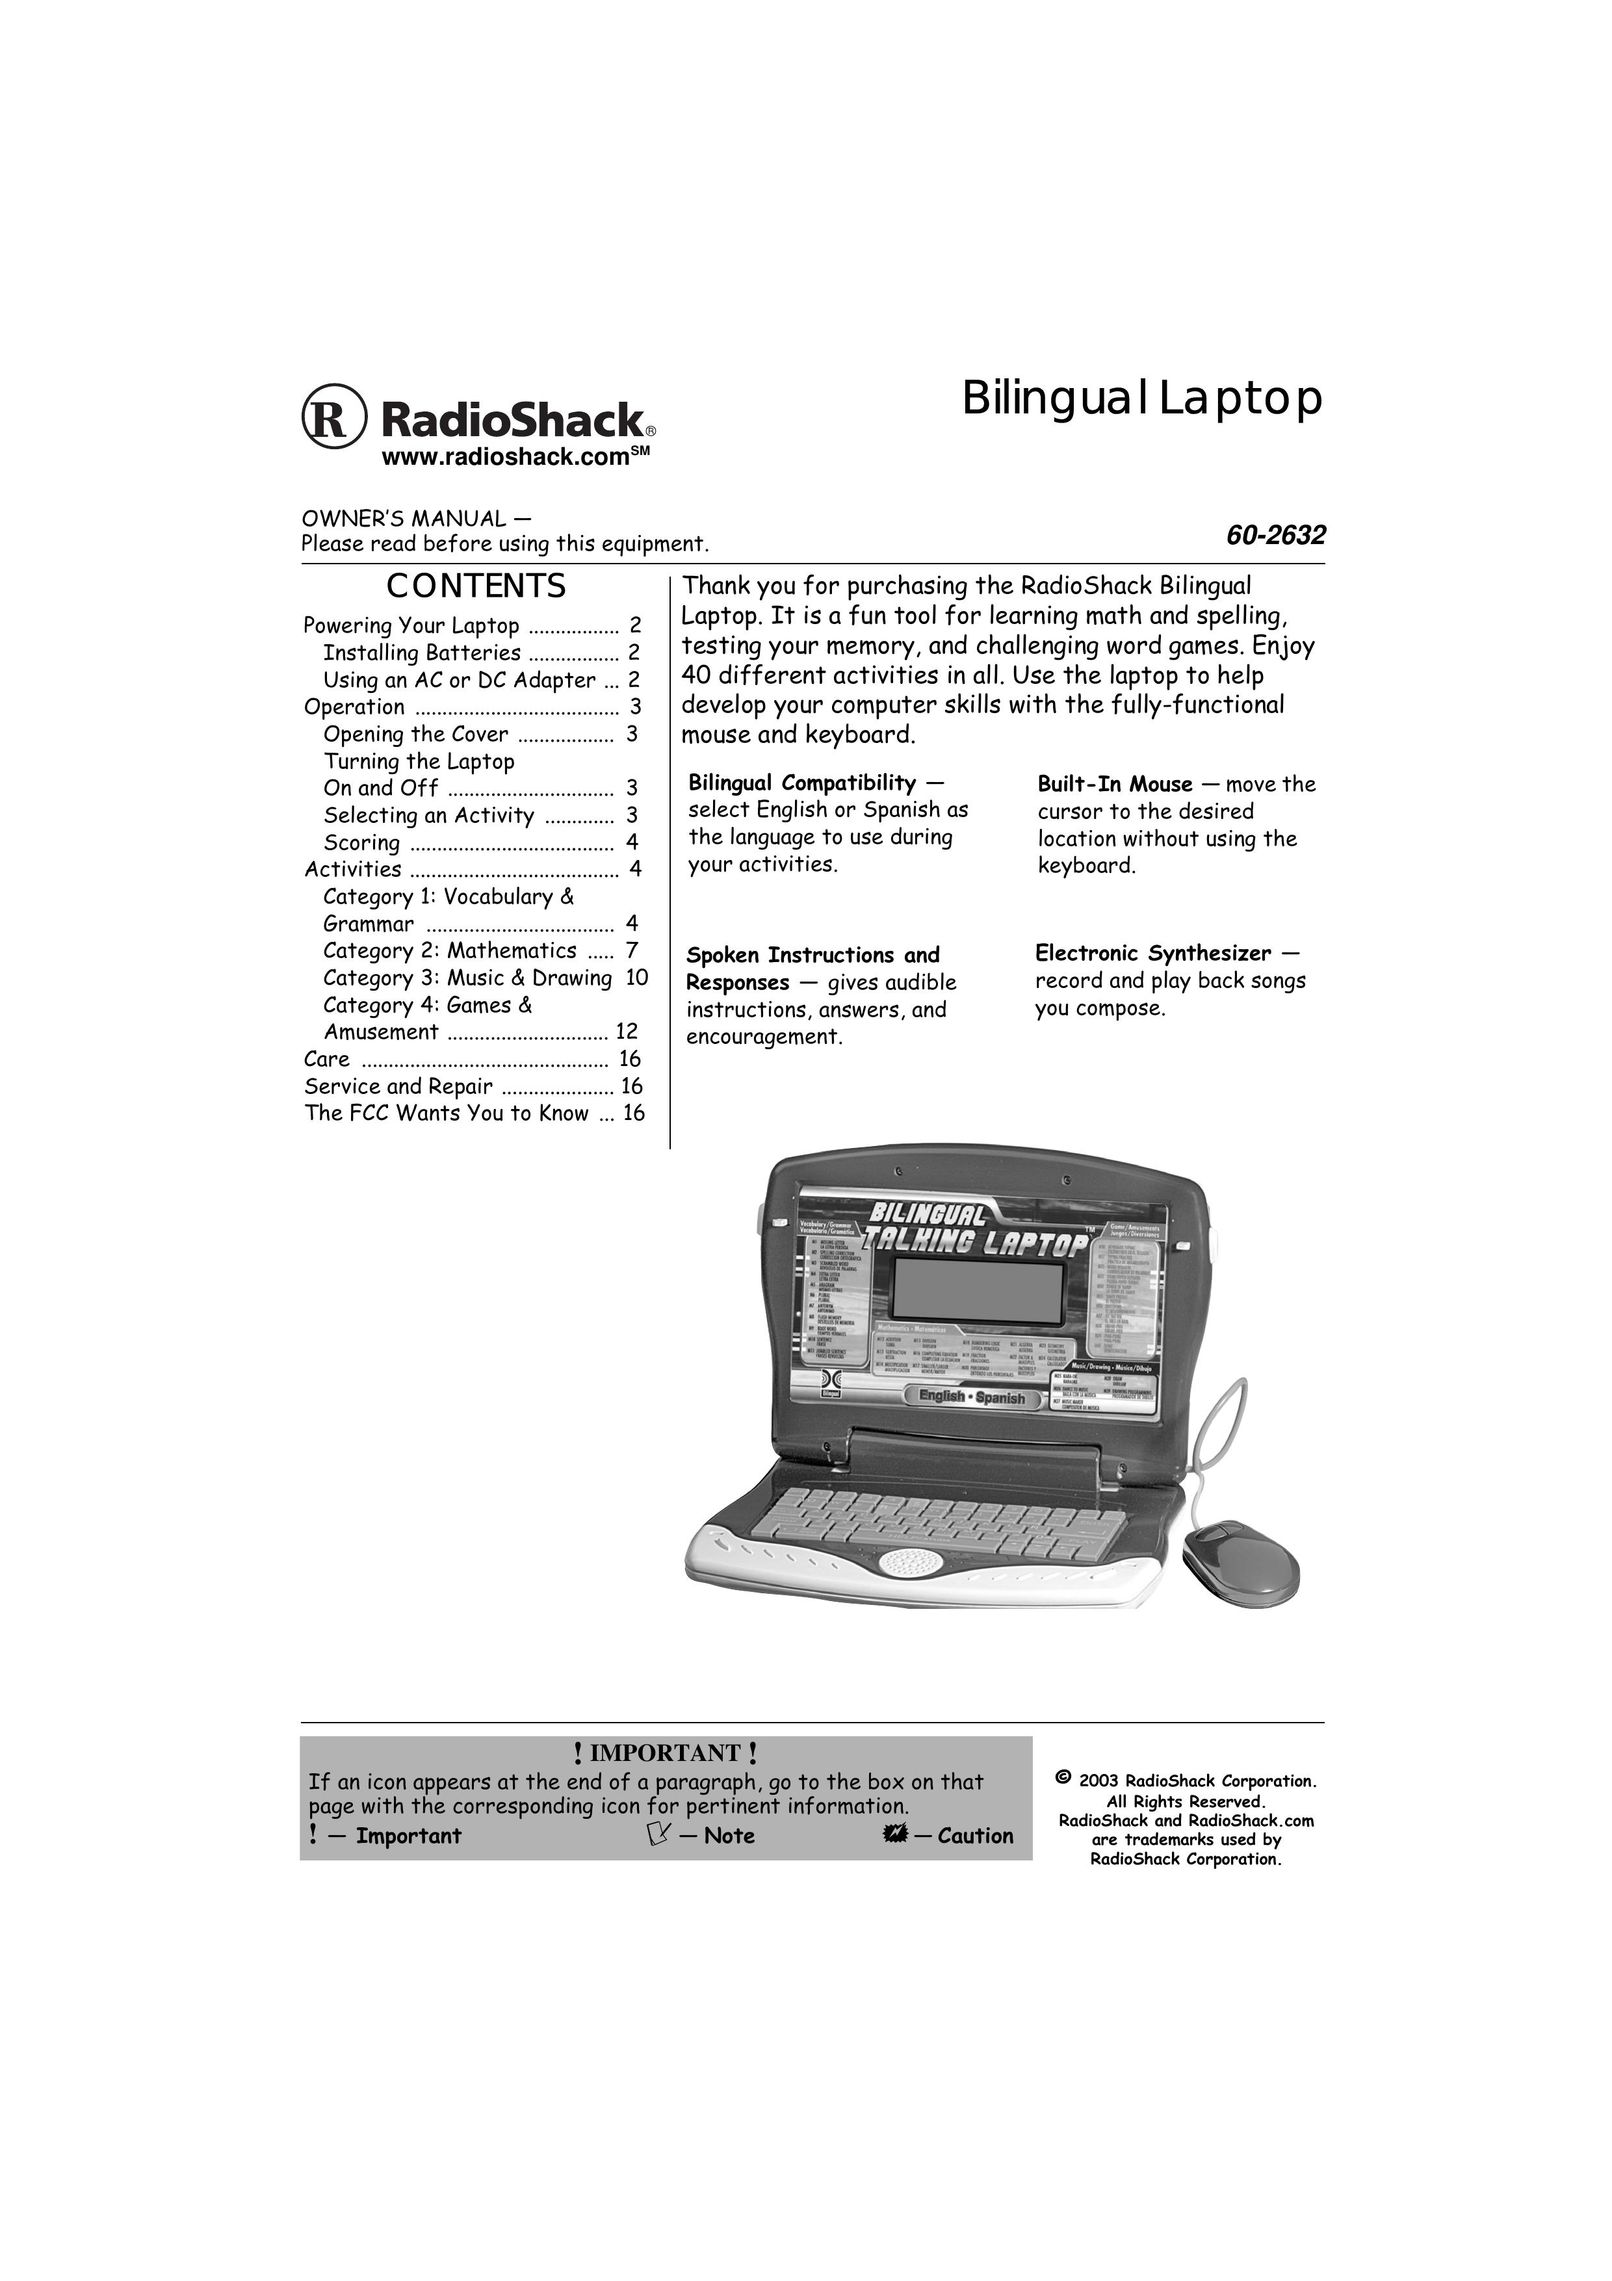 Radio Shack 60-2632 Laptop User Manual